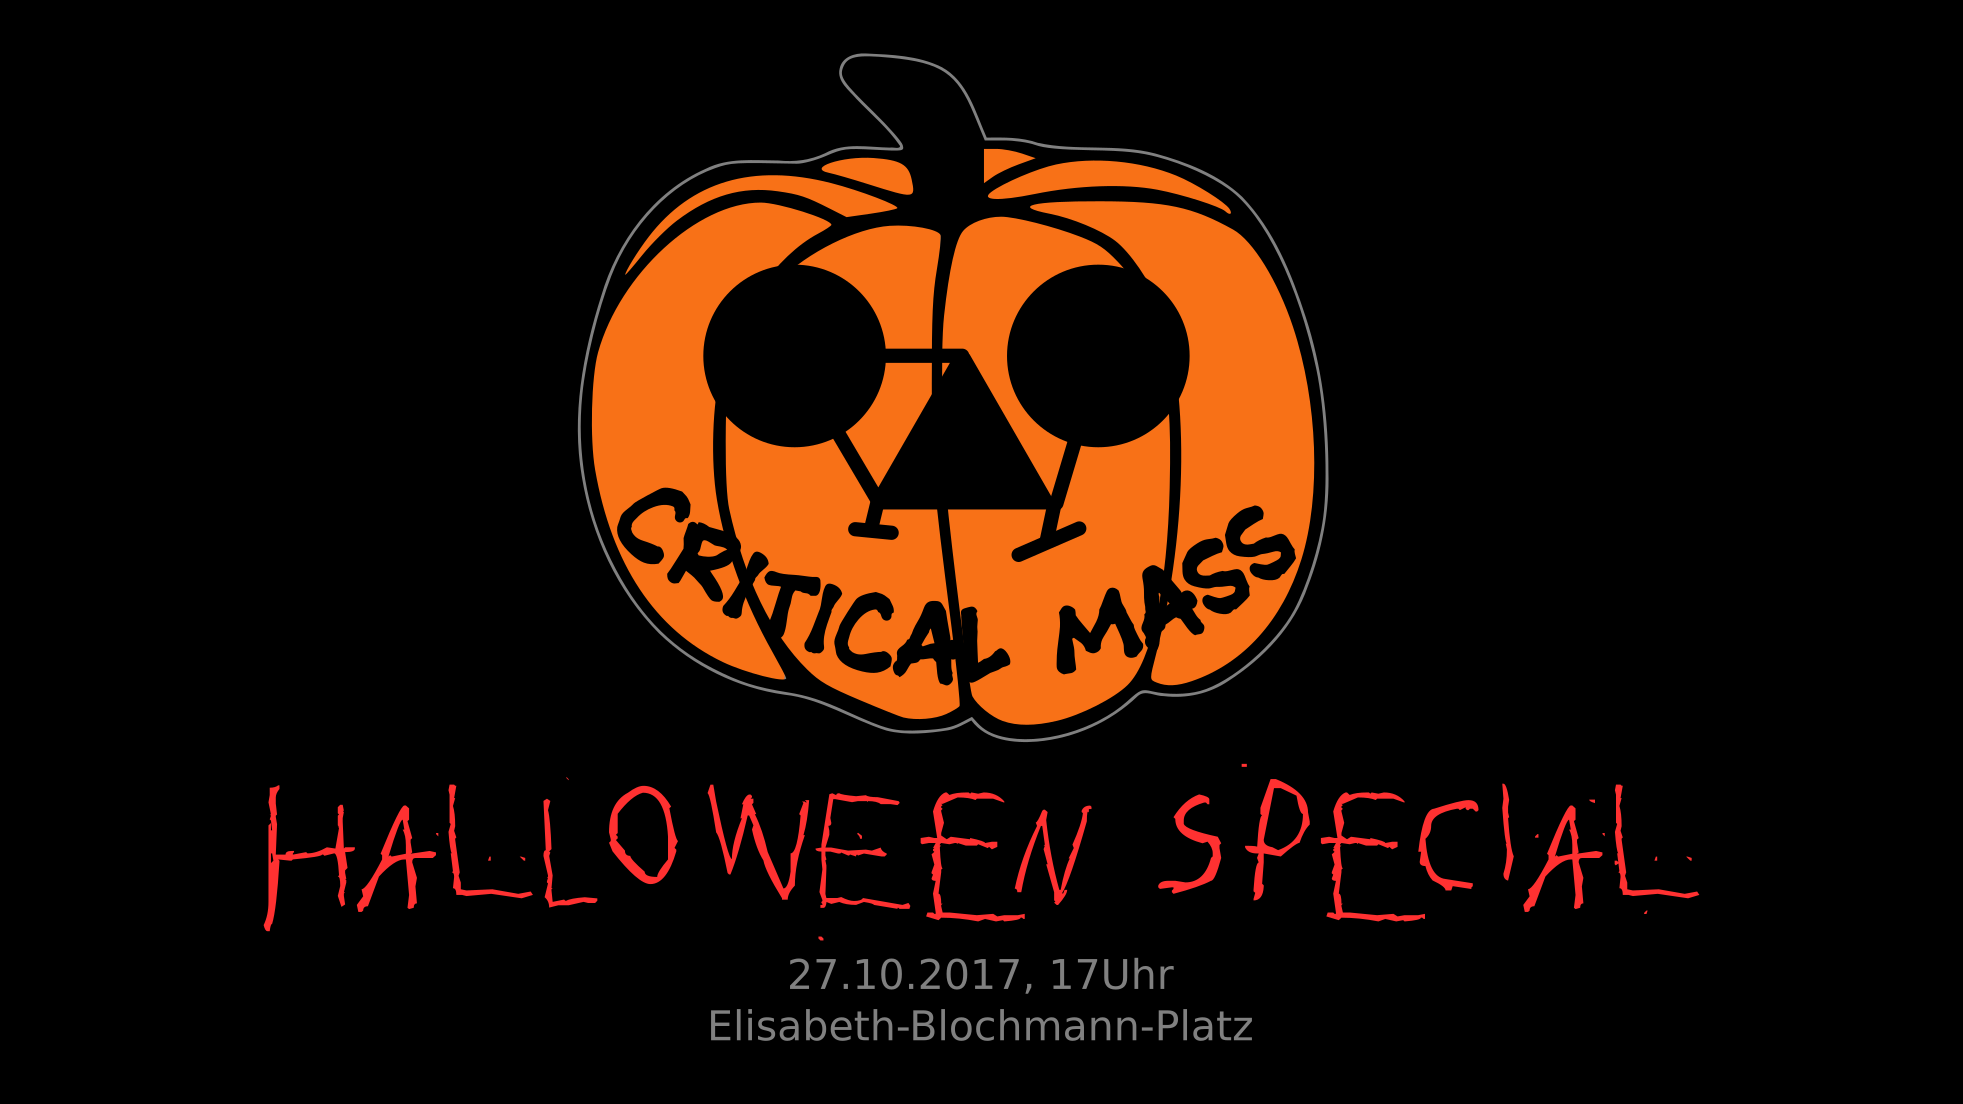 Am 27.10. massenhaft auf Rädern quer durch Marburg: Critical Mass • Halloween Special